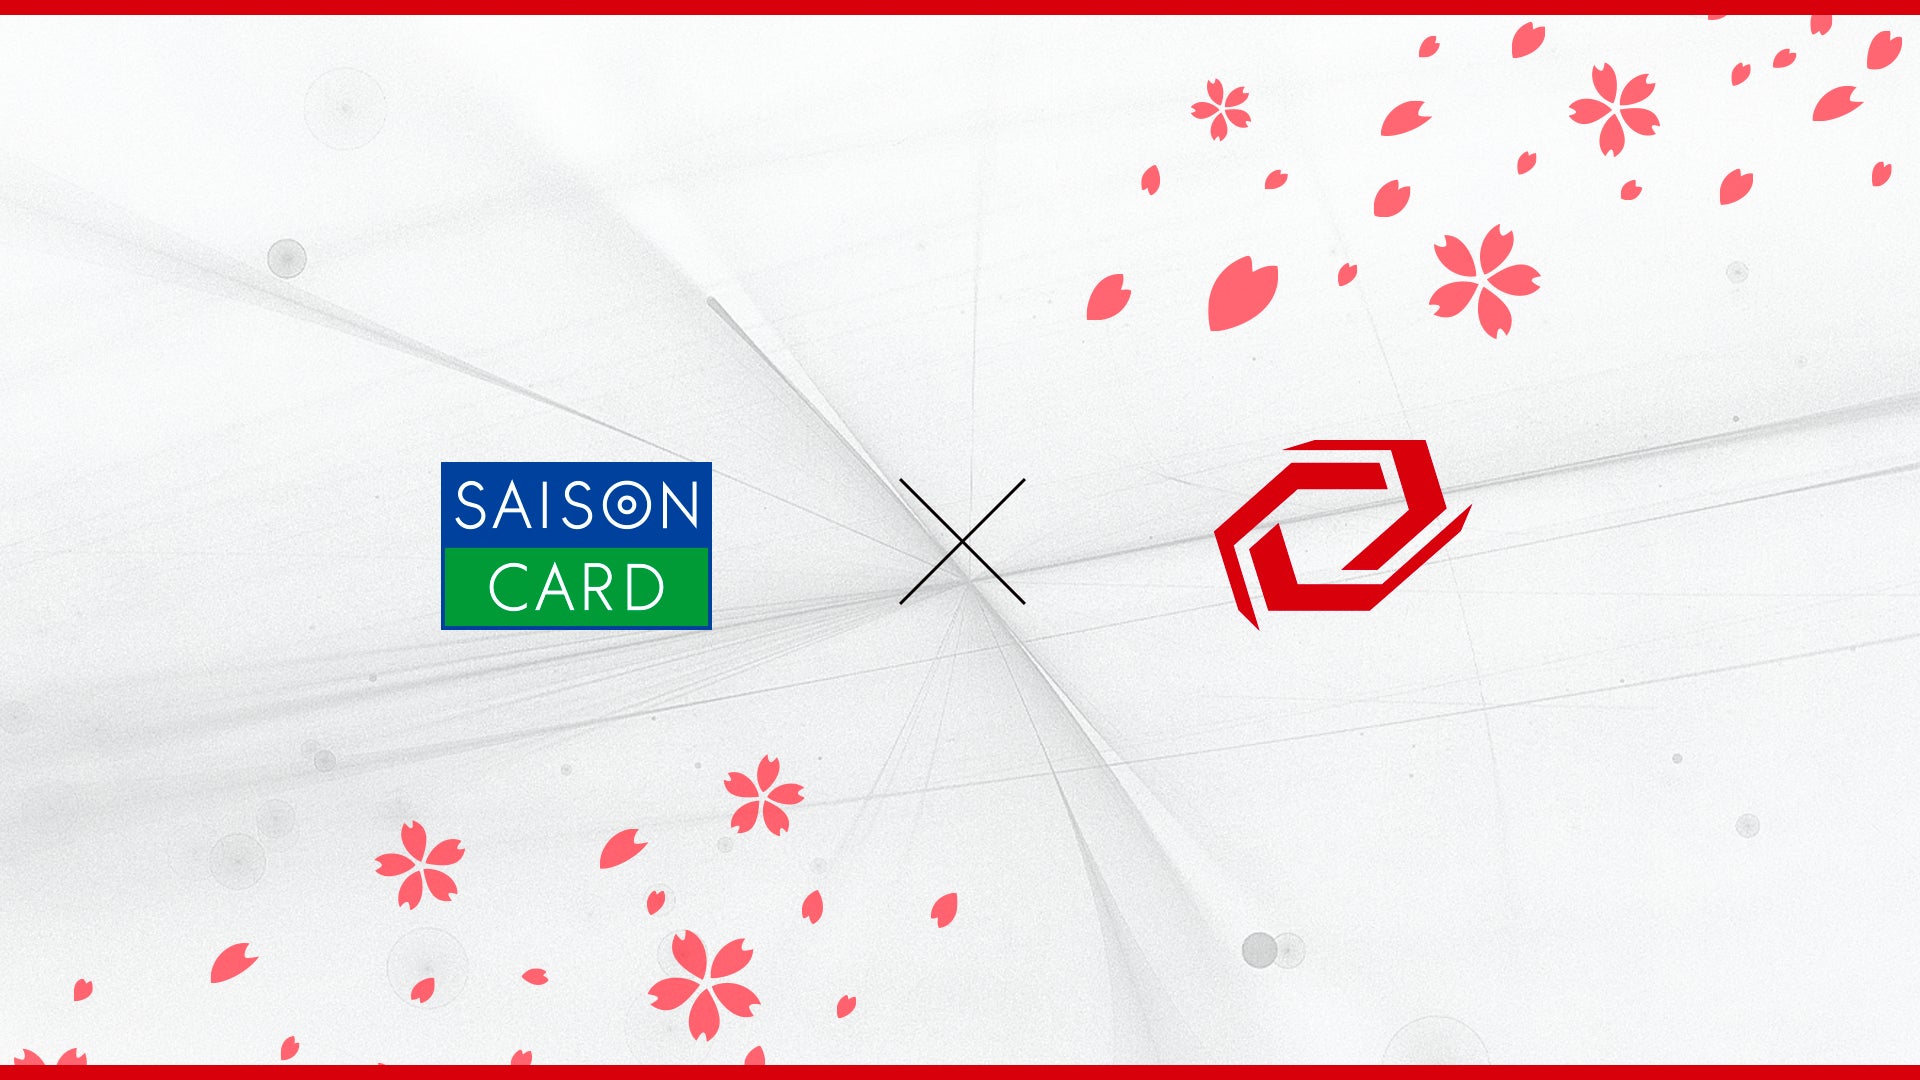 プロeスポーツチーム「Sengoku Gaming」が「セゾンカード」とのスポンサー契約を締結